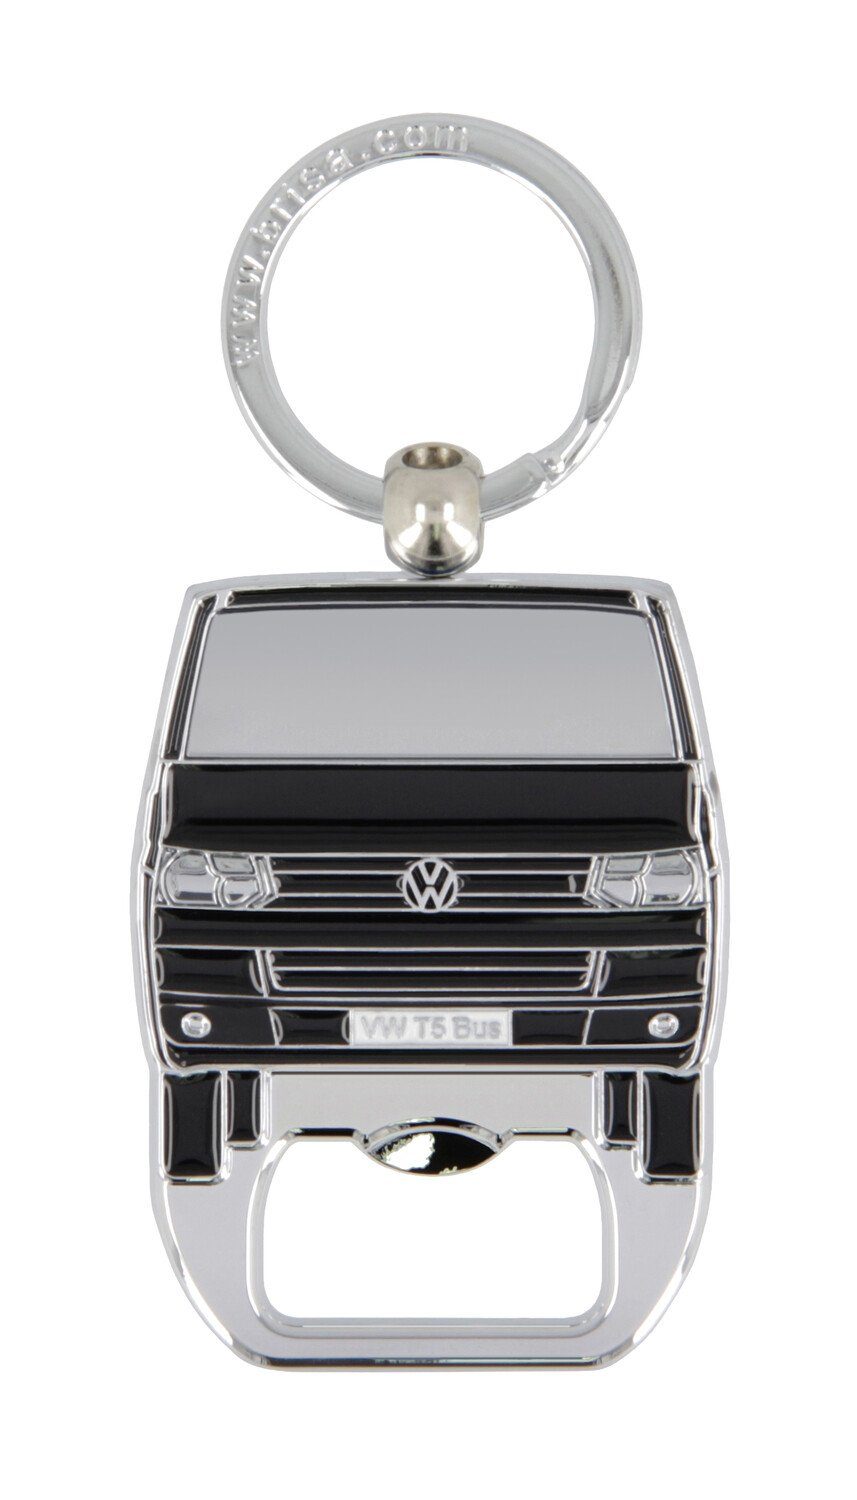 VW Collection by BRISA Schlüsselanhänger Volkswagen Schlüsselring mit Flaschenöffner im T5 Bulli Bus Design, Emailliert Schwarz